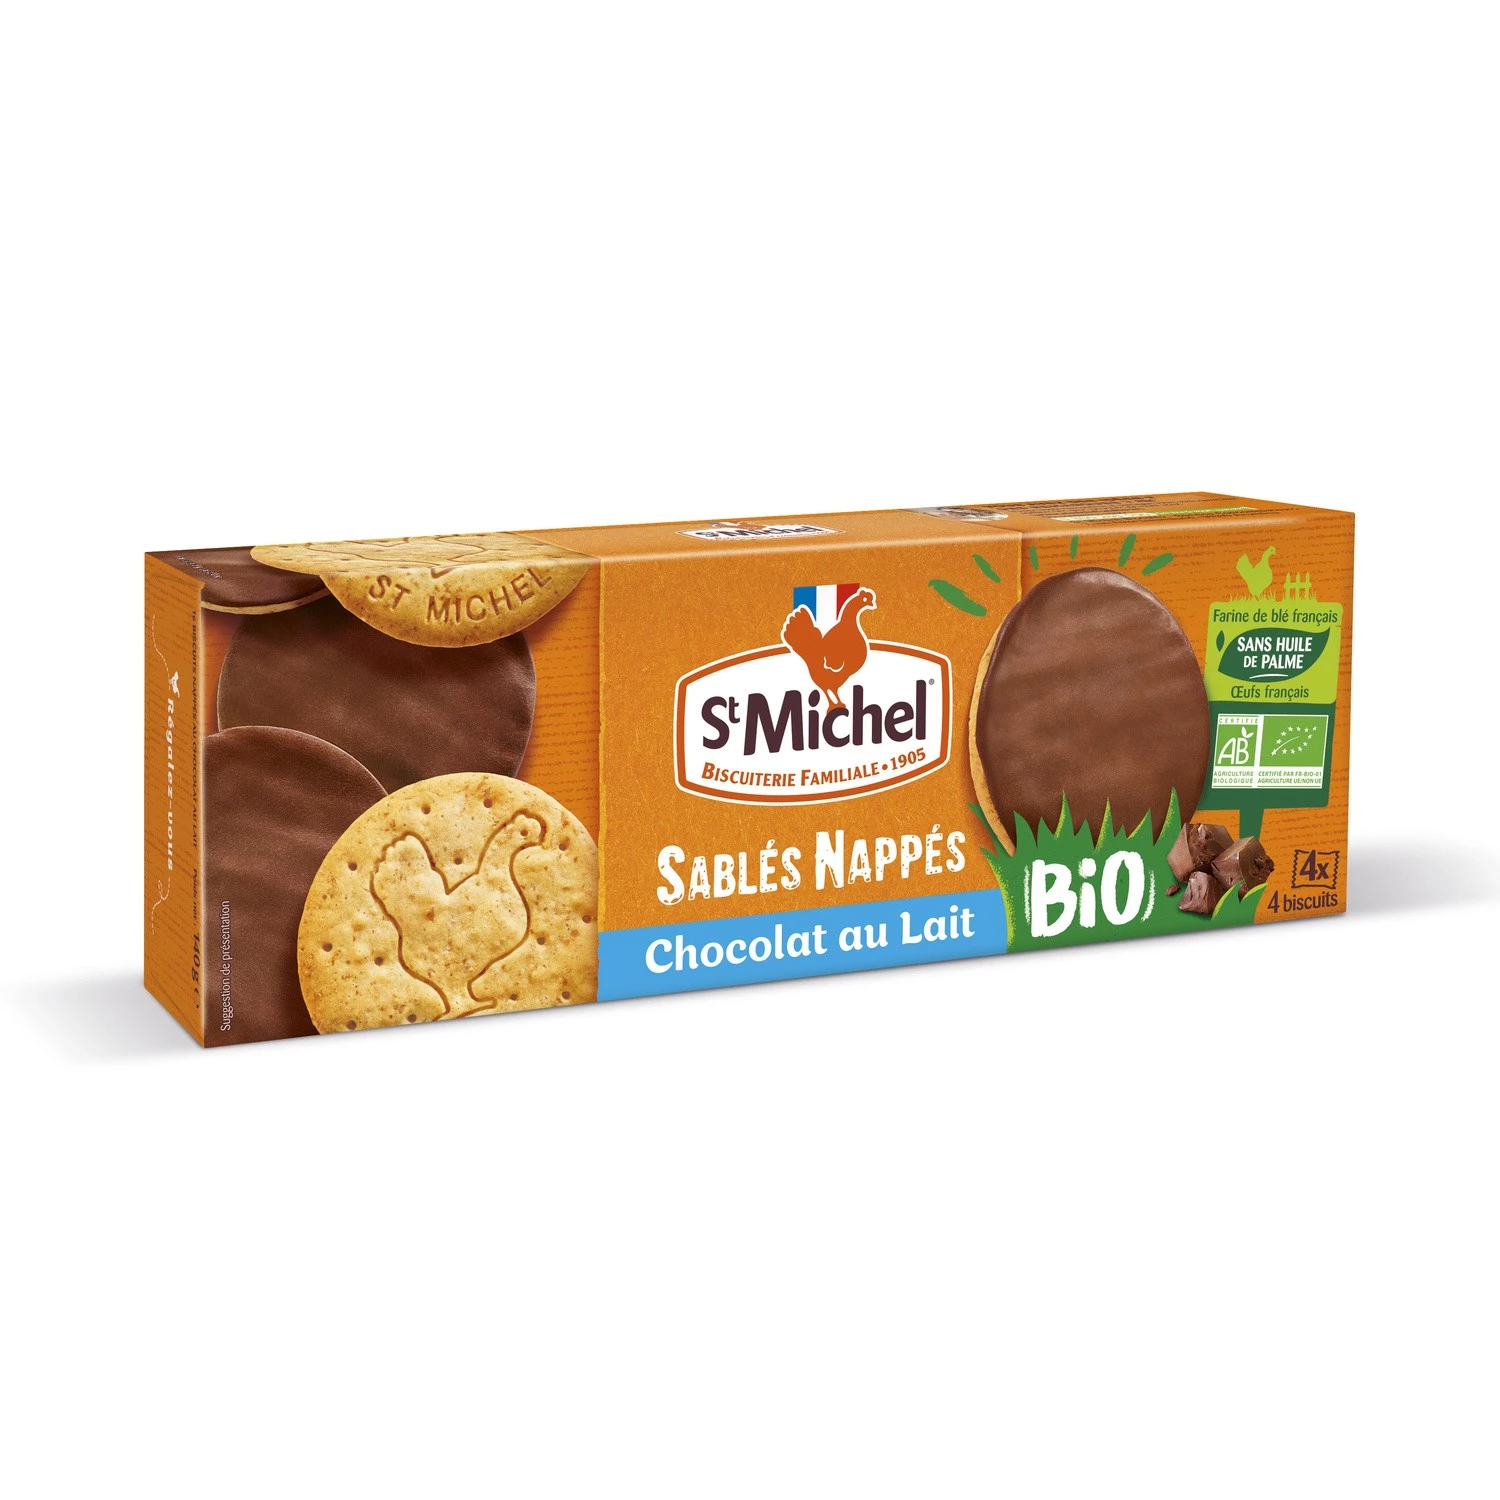 Organic milk chocolate shortbread biscuits 140g - ST MICHEL